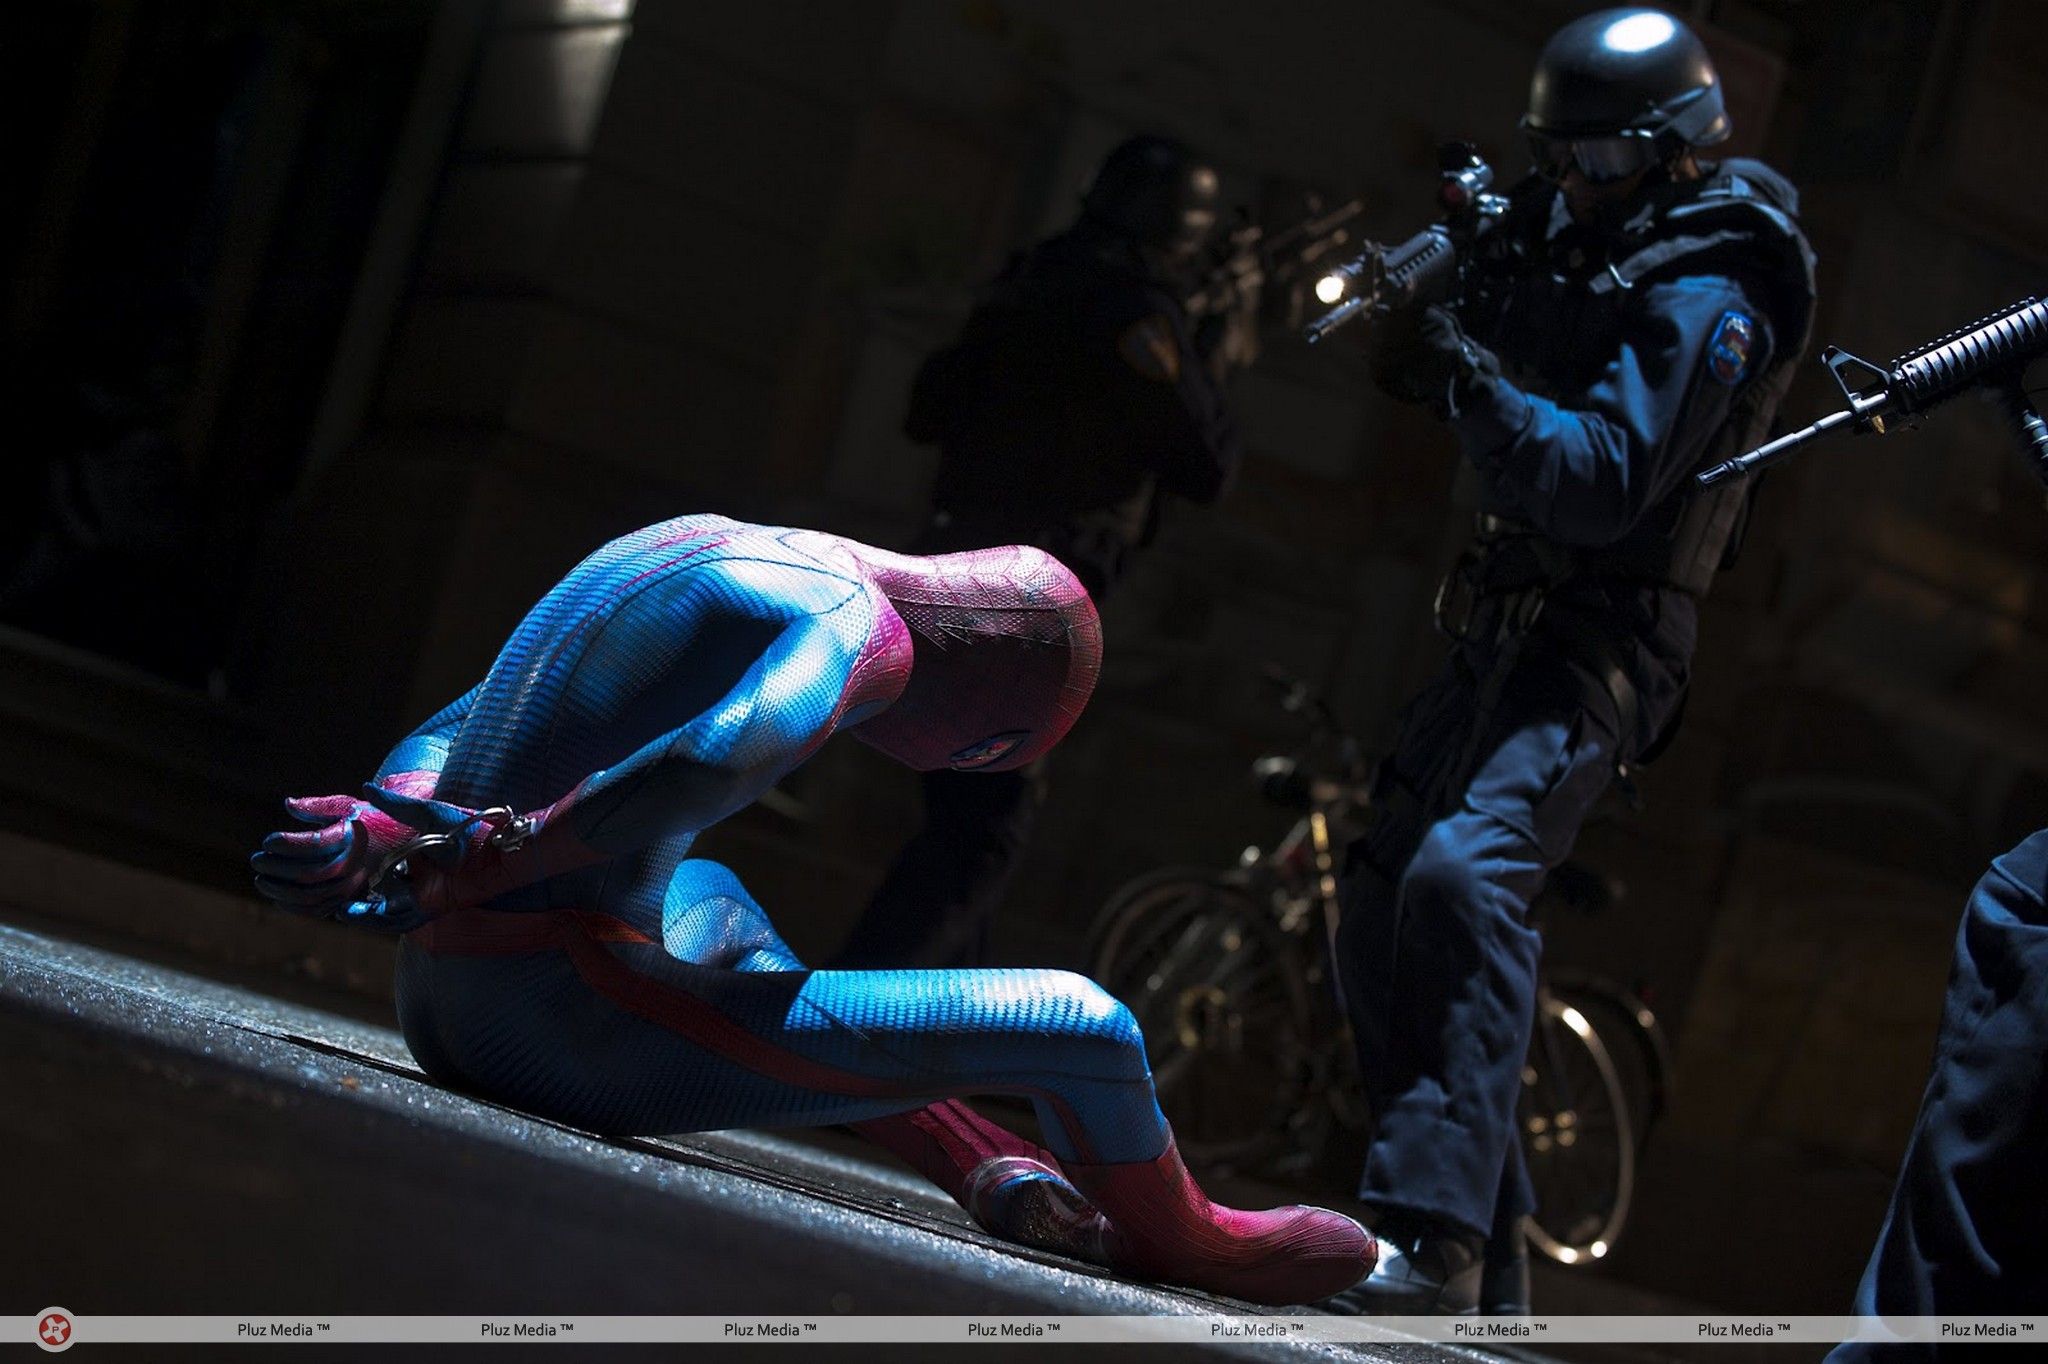 The Amazing Spider-Man Movie Stills | Picture 213559